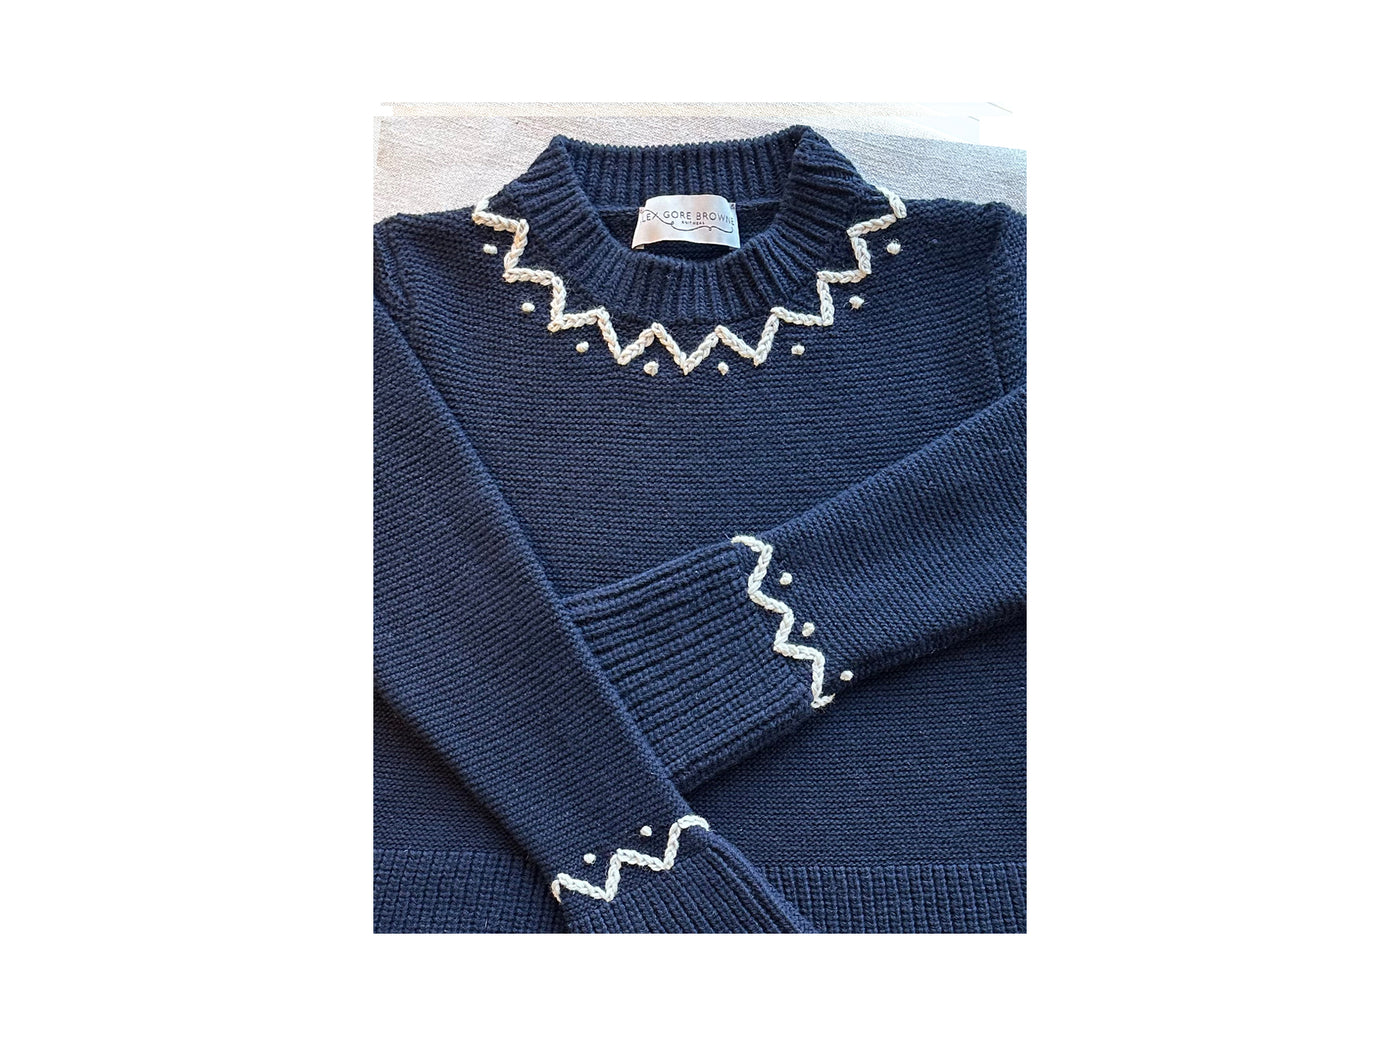 Teddy Sweater with Chunky Chain Stitch Neckline - Navy